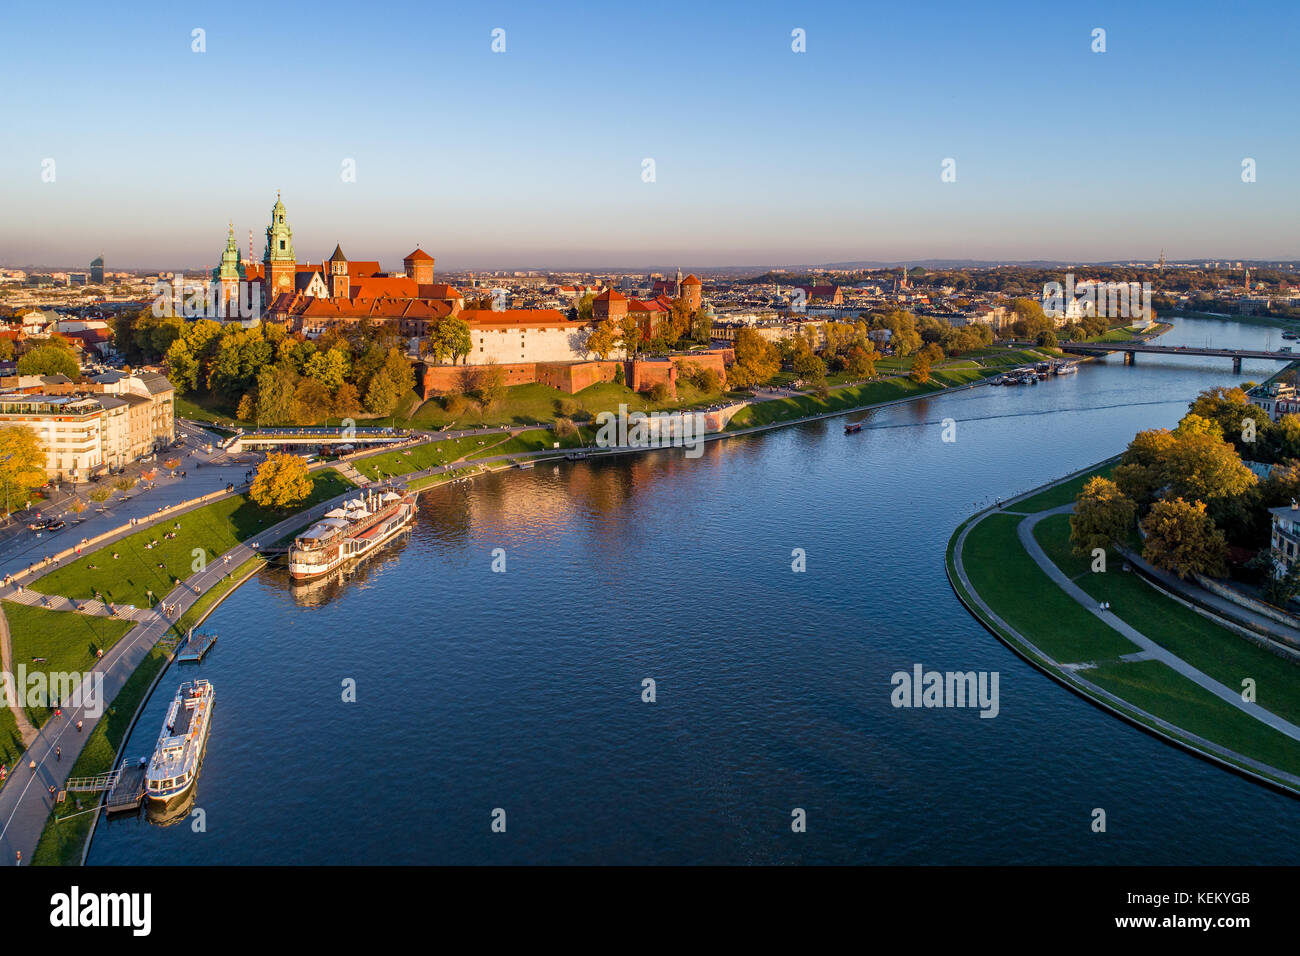 Skyline-Panorama von Krakau, Polen, mit Königlichen Wawel-Schloss, Kathedrale, Weichsel, Brücke, Hafen, Schiffe und Restaurant an Bord. Luftaufnahme, Herbst. Stockfoto